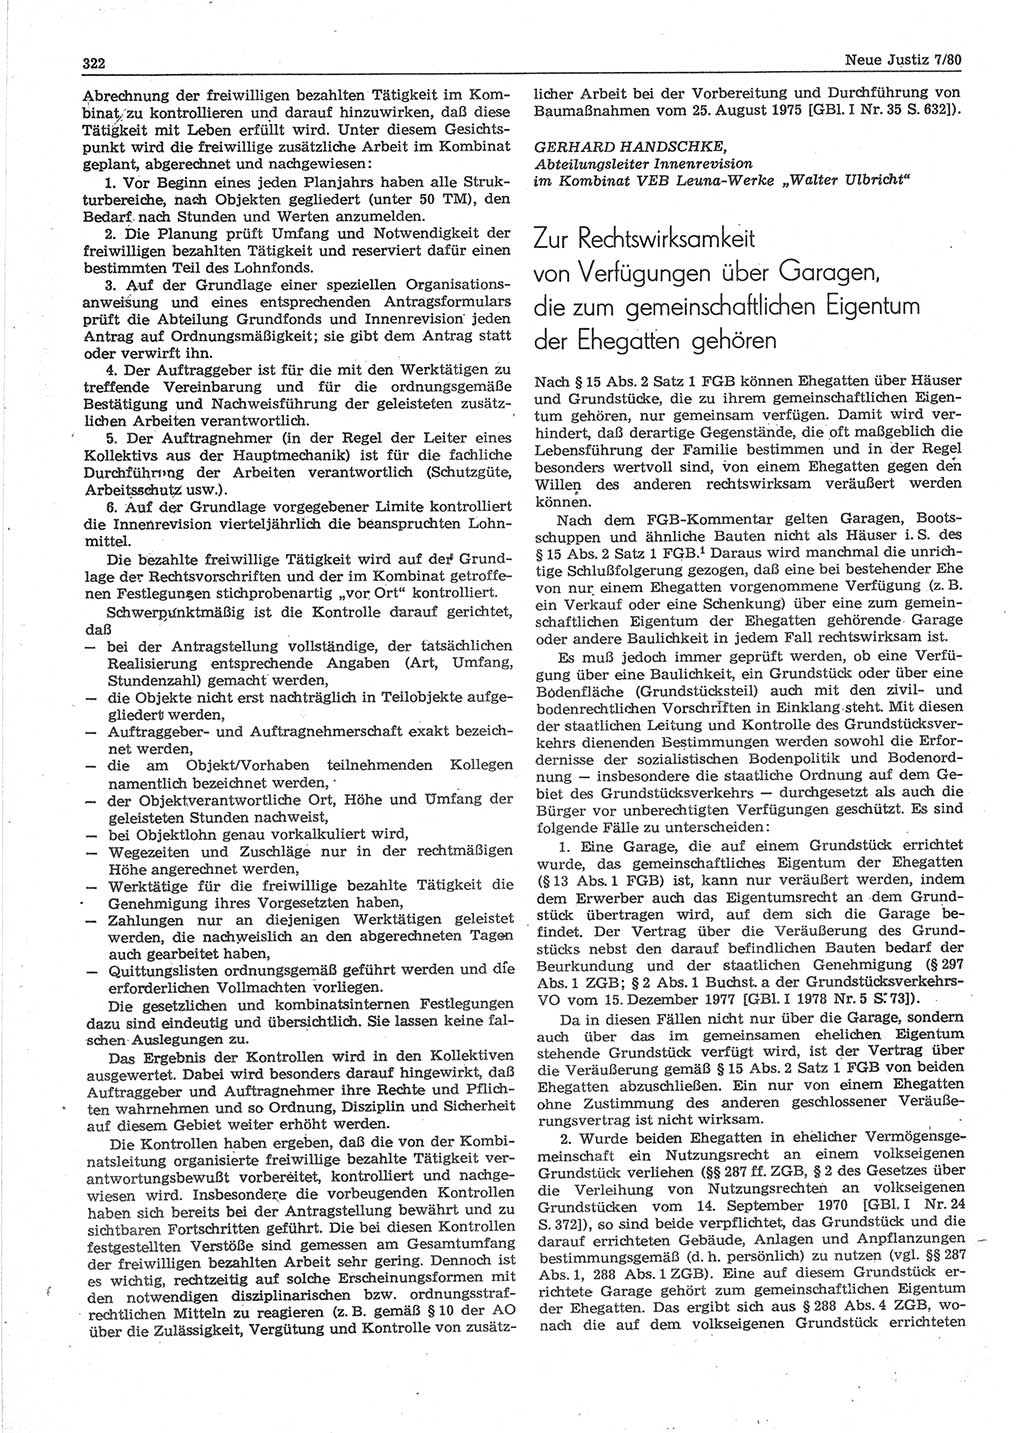 Neue Justiz (NJ), Zeitschrift für sozialistisches Recht und Gesetzlichkeit [Deutsche Demokratische Republik (DDR)], 34. Jahrgang 1980, Seite 322 (NJ DDR 1980, S. 322)